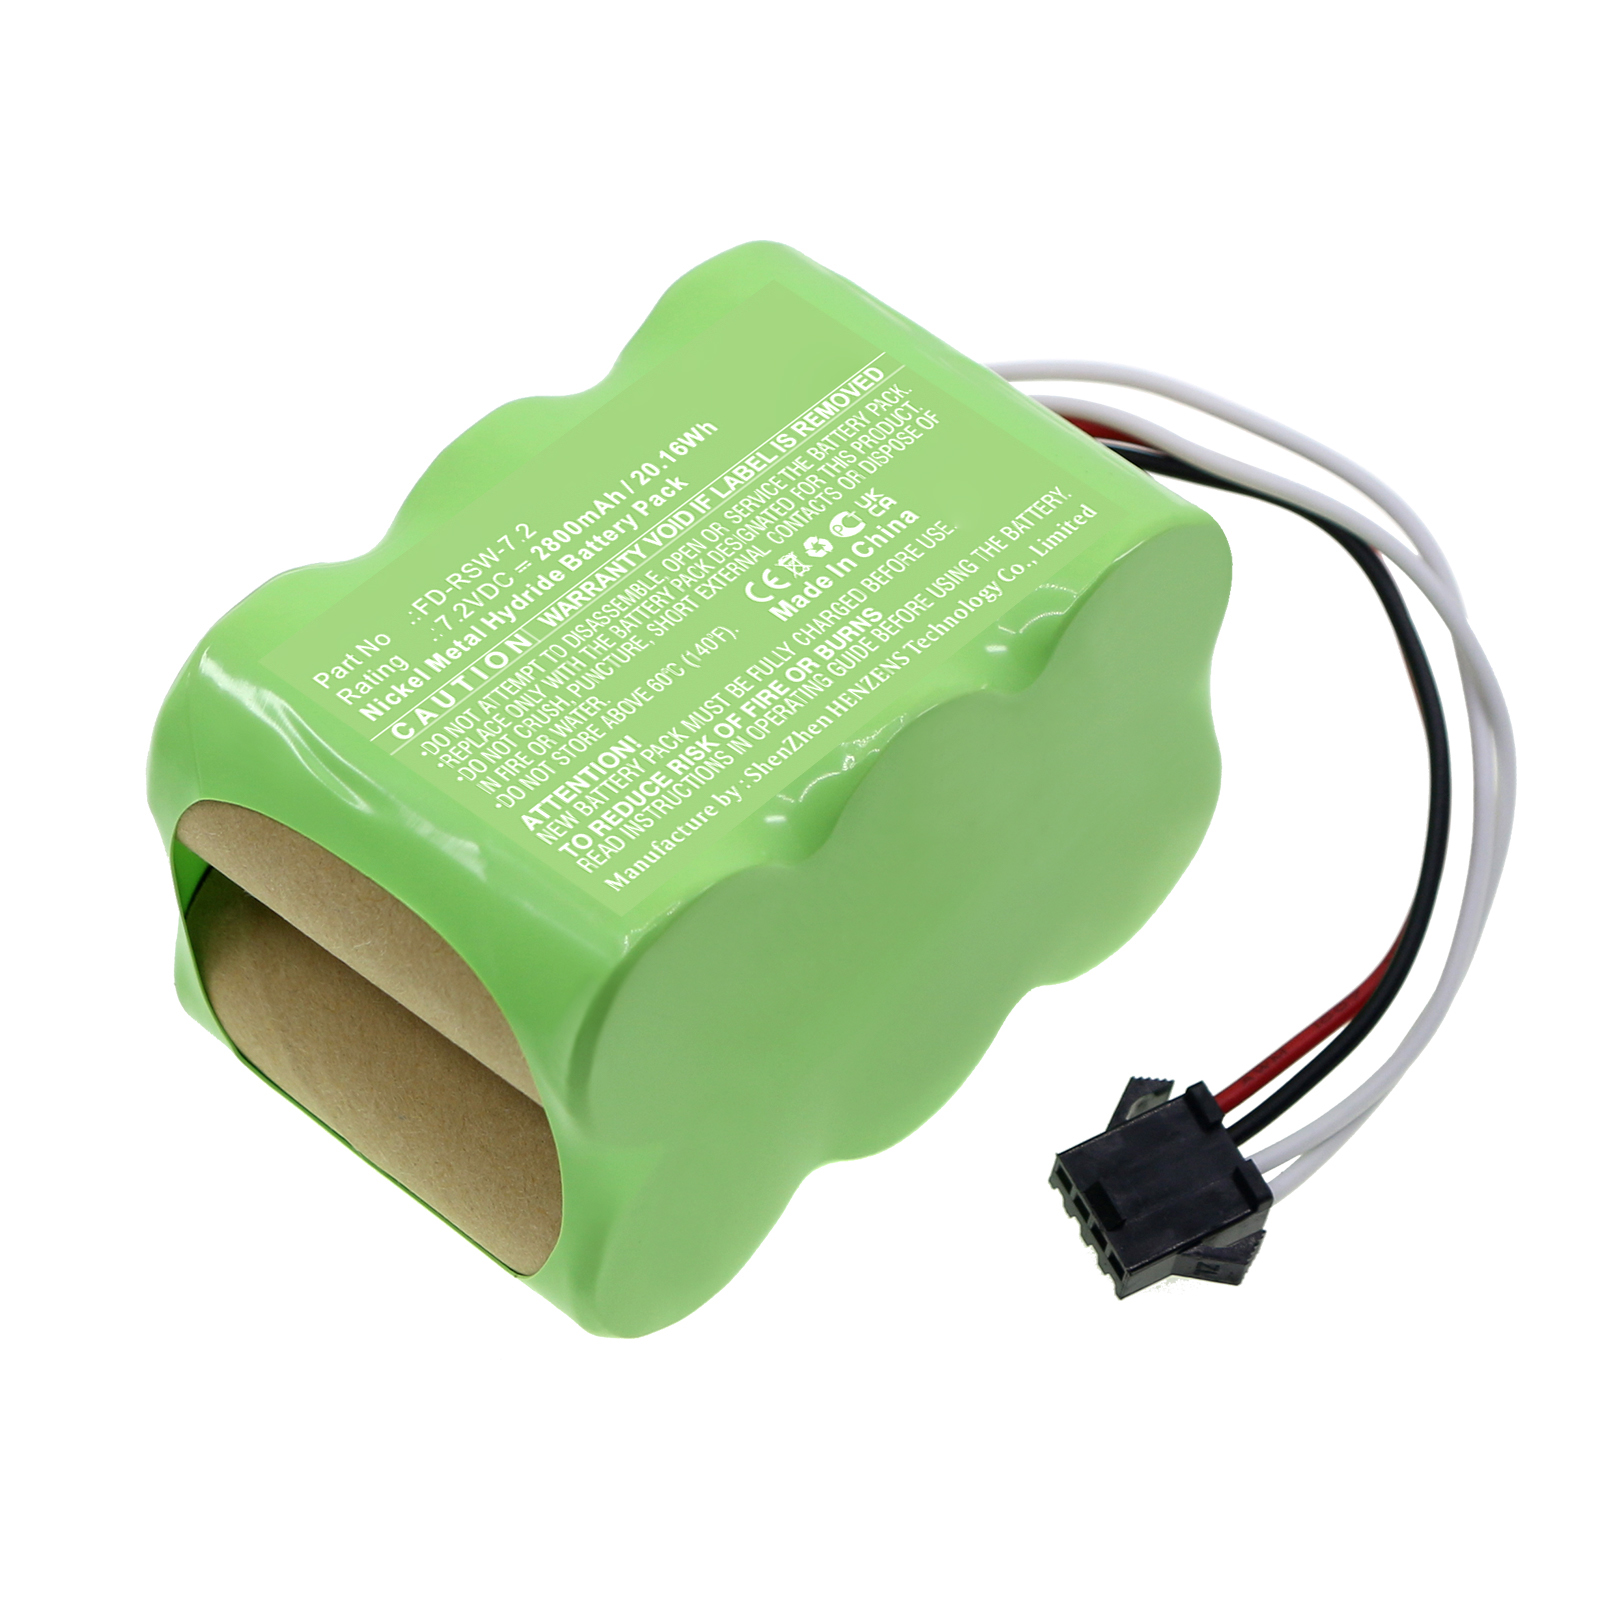 Synergy Digital Vacuum Cleaner Battery, Compatible with Pyle FD-RSW-7.2 Vacuum Cleaner Battery (Ni-MH, 7.2V, 2800mAh)